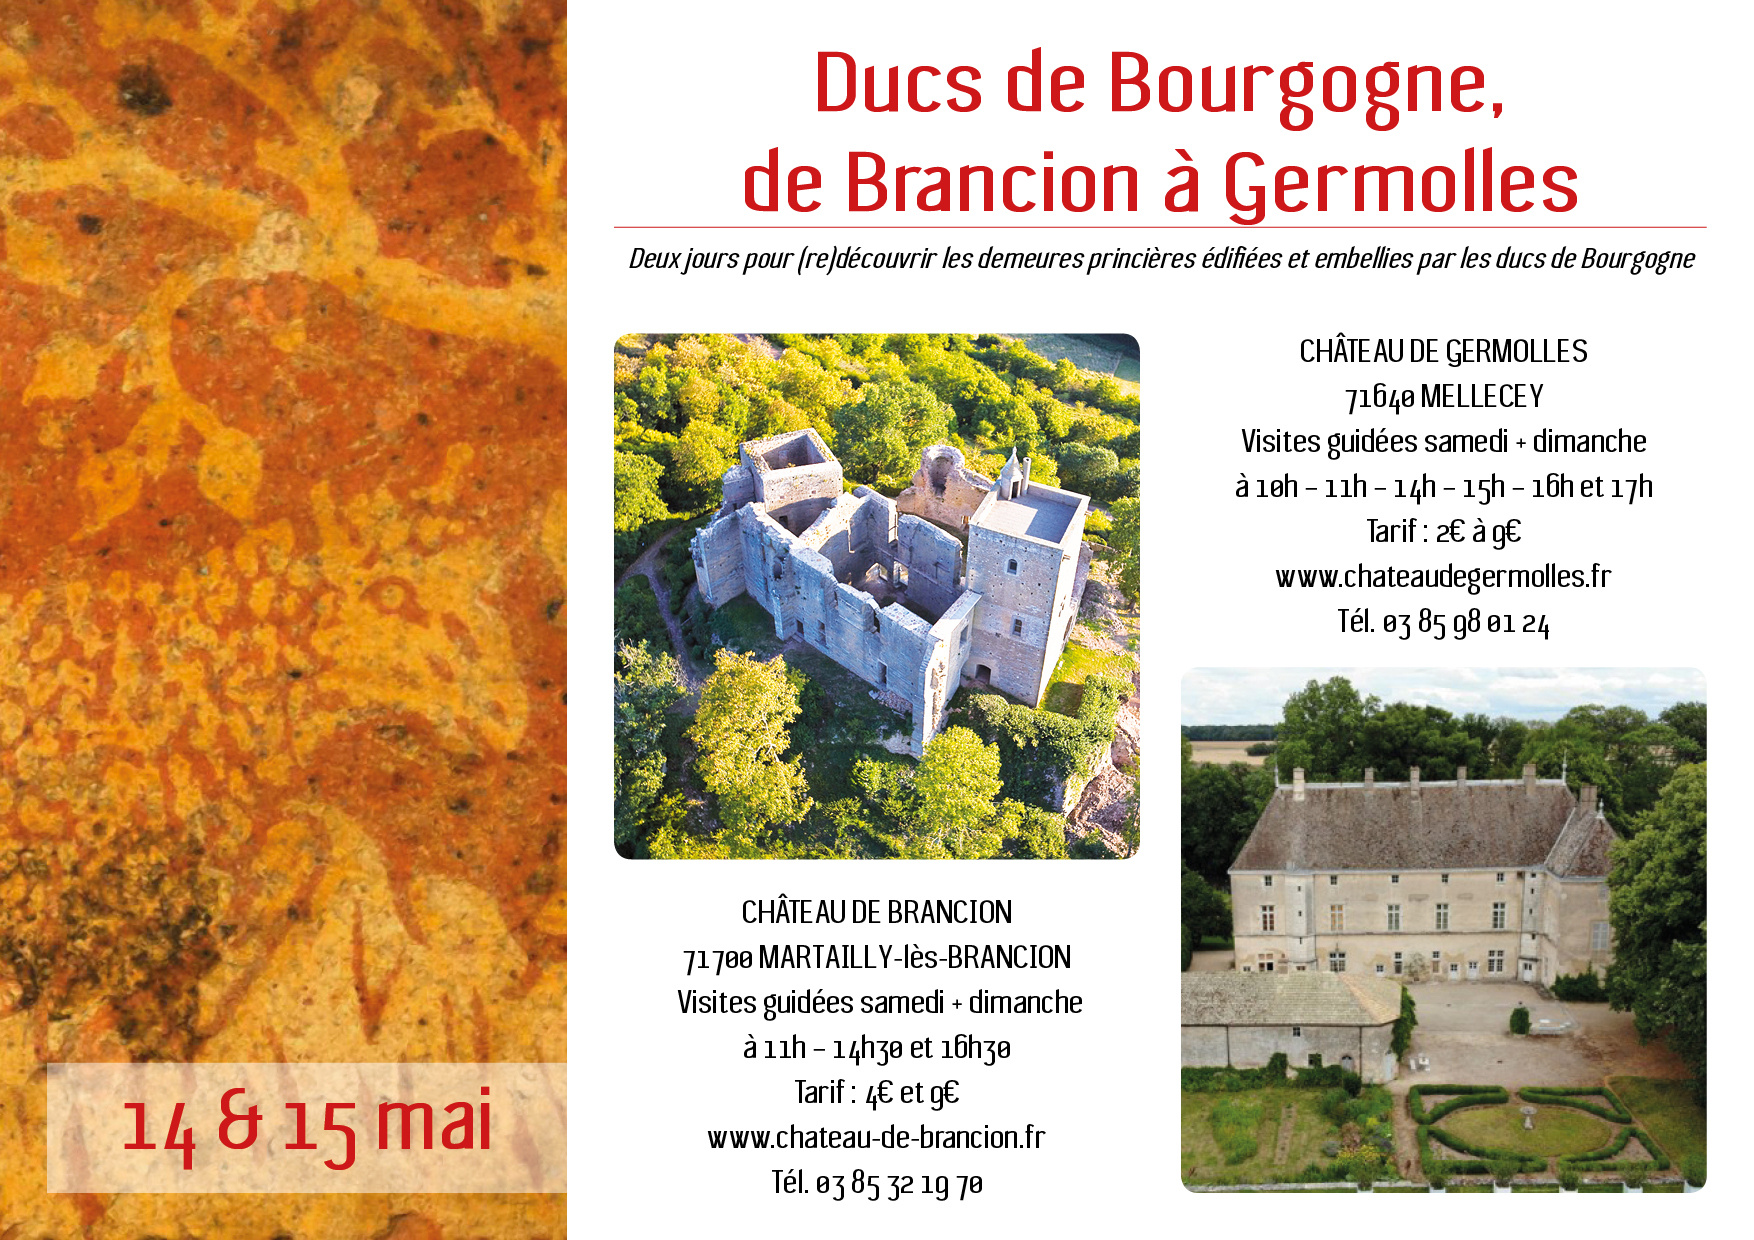 Ducs de Bourgogne, de Brancion à Germolles